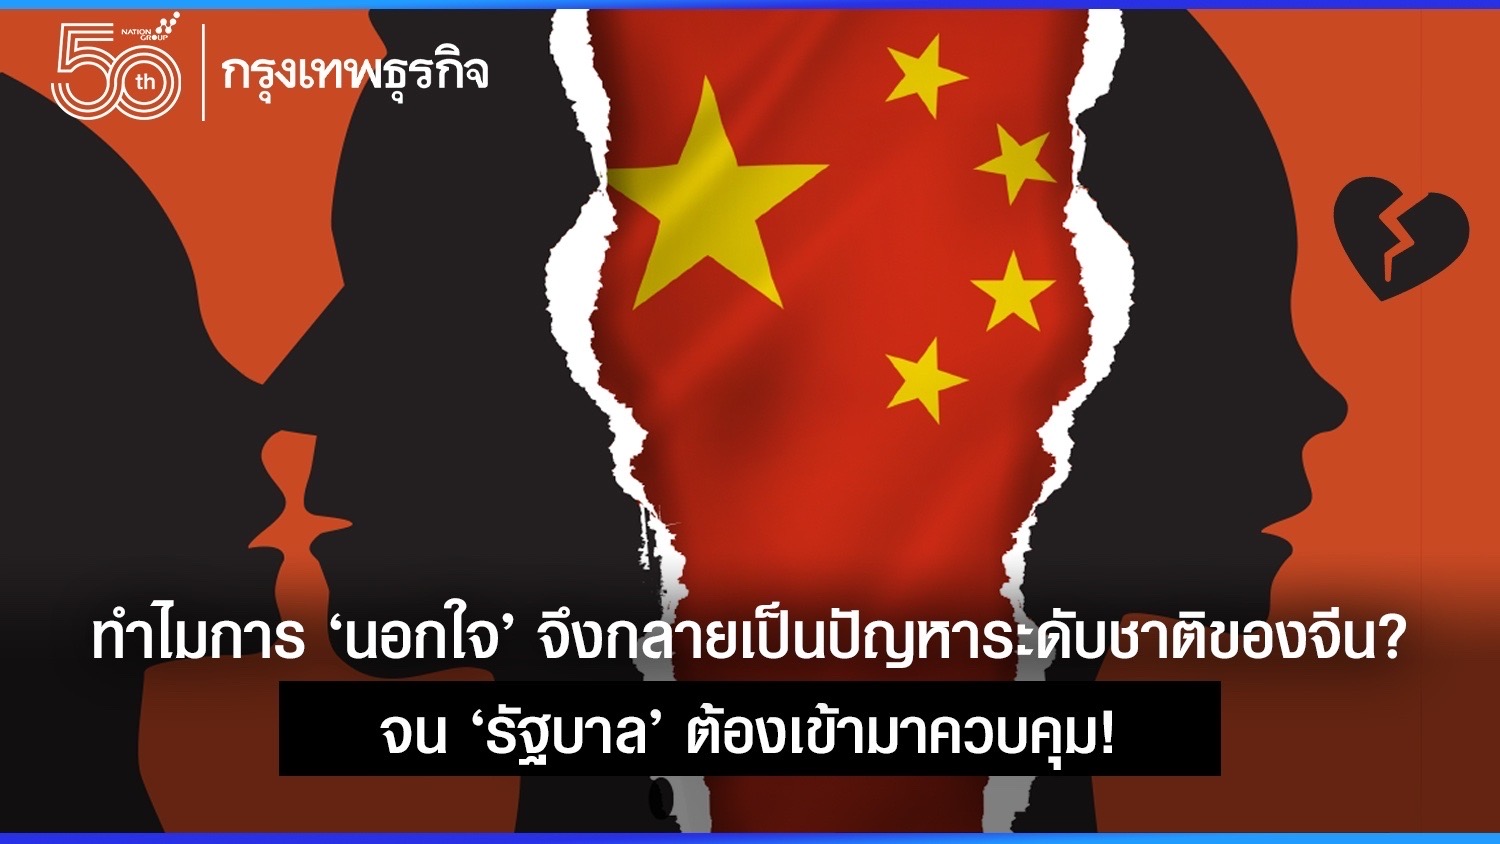 ทำไมการ ‘นอกใจ’ จึงกลายเป็นปัญหาระดับชาติของจีน? จน ‘รัฐบาล’ ต้องควบคุม!